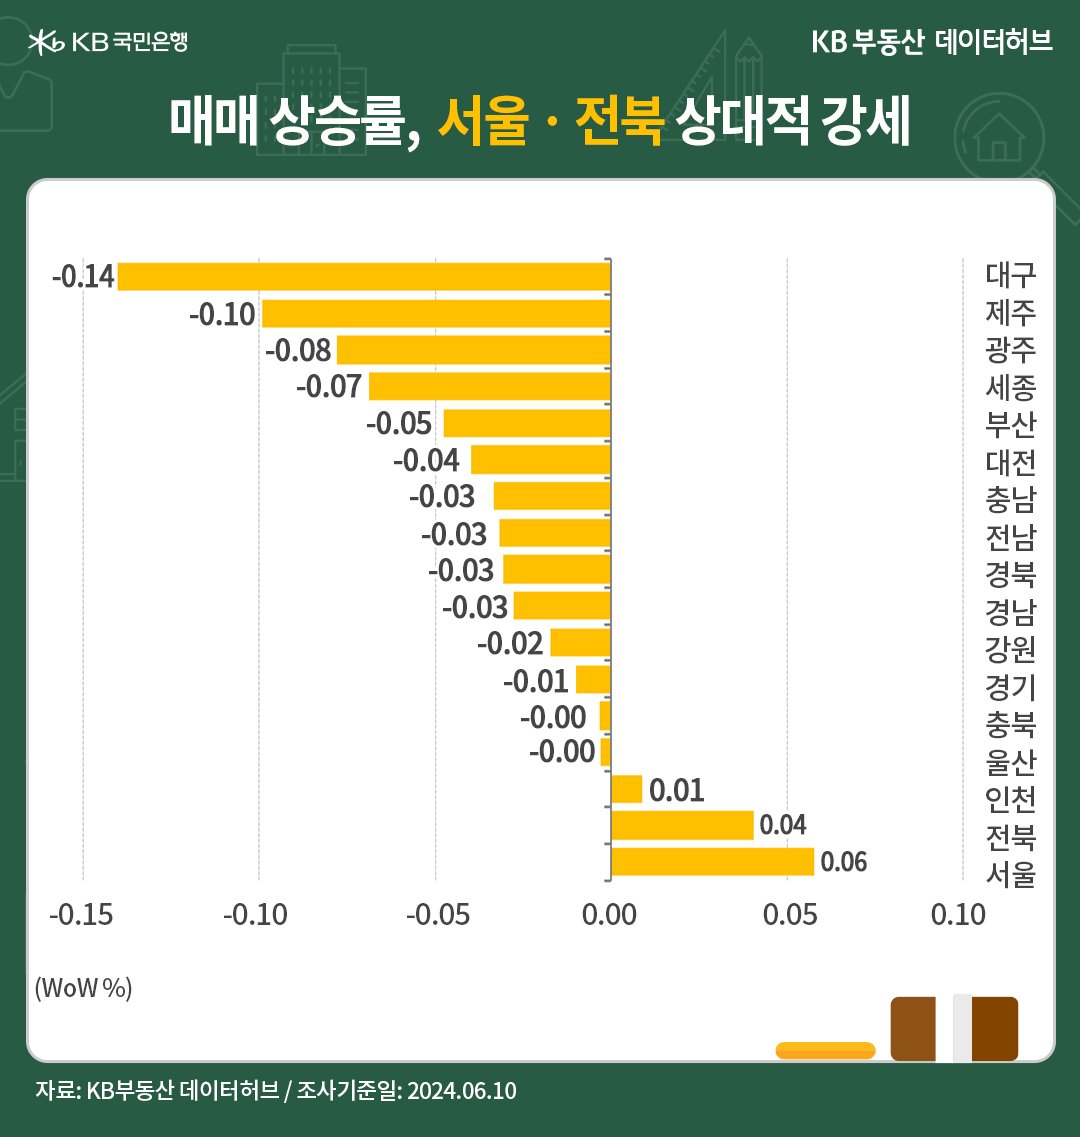 '전국' 권역별 '매매가격'은 서울 4주째 상승에 이어 수도권도 2주째 상승인 내용을 보여주는 그래프이다.